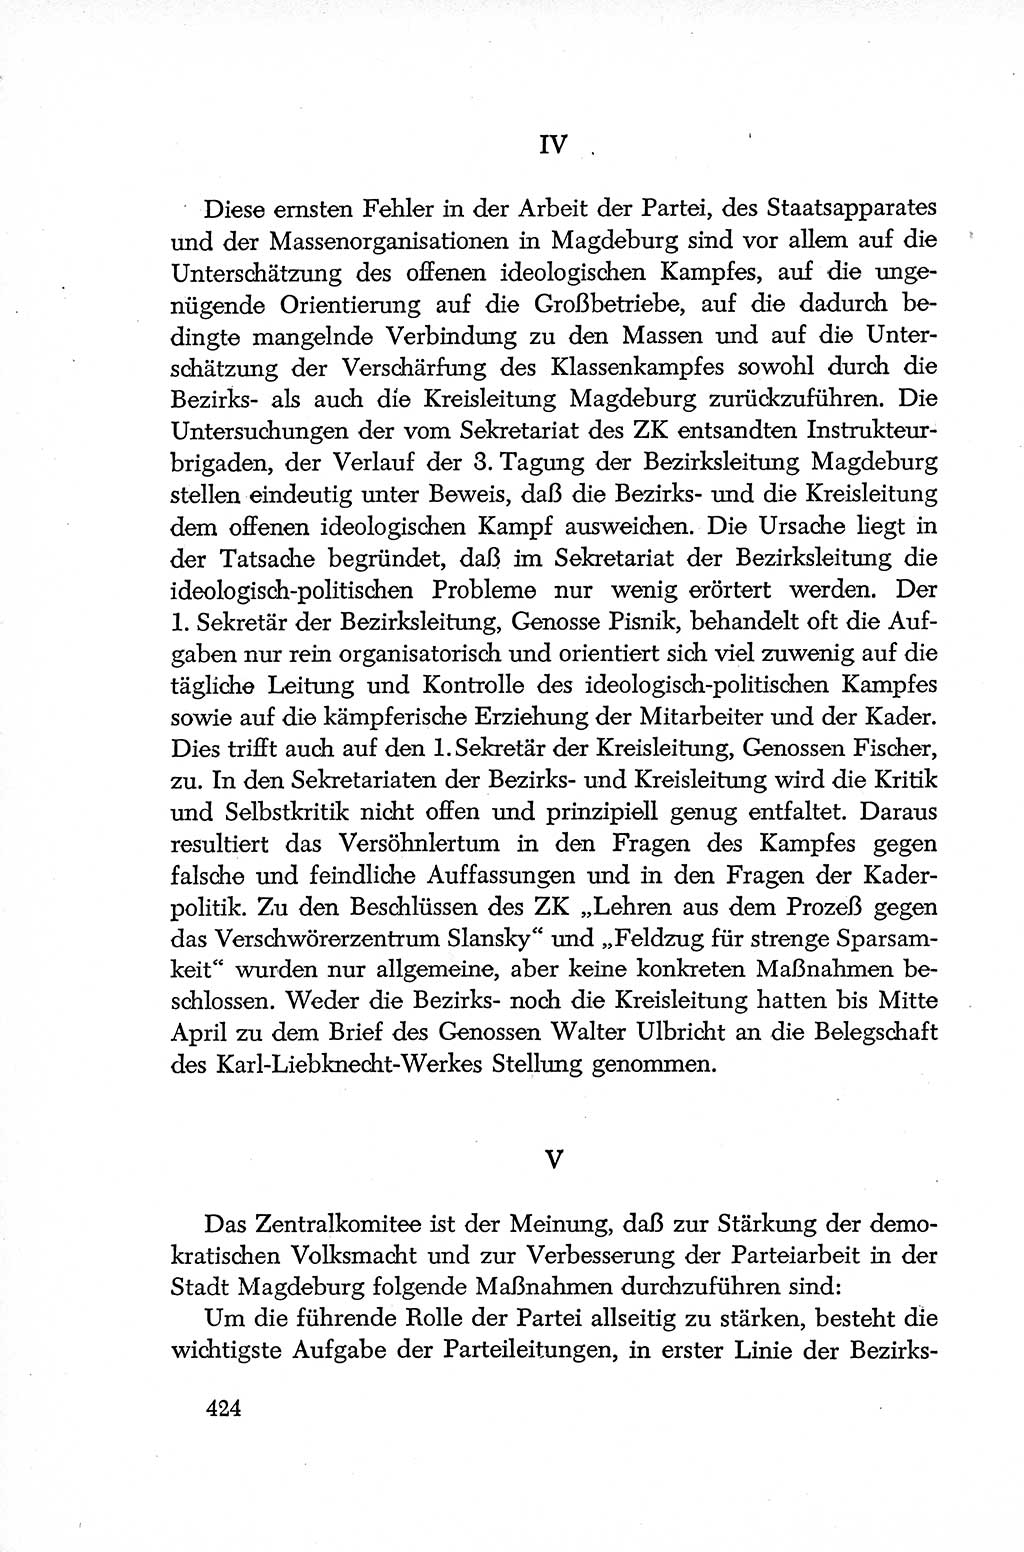 Dokumente der Sozialistischen Einheitspartei Deutschlands (SED) [Deutsche Demokratische Republik (DDR)] 1952-1953, Seite 424 (Dok. SED DDR 1952-1953, S. 424)